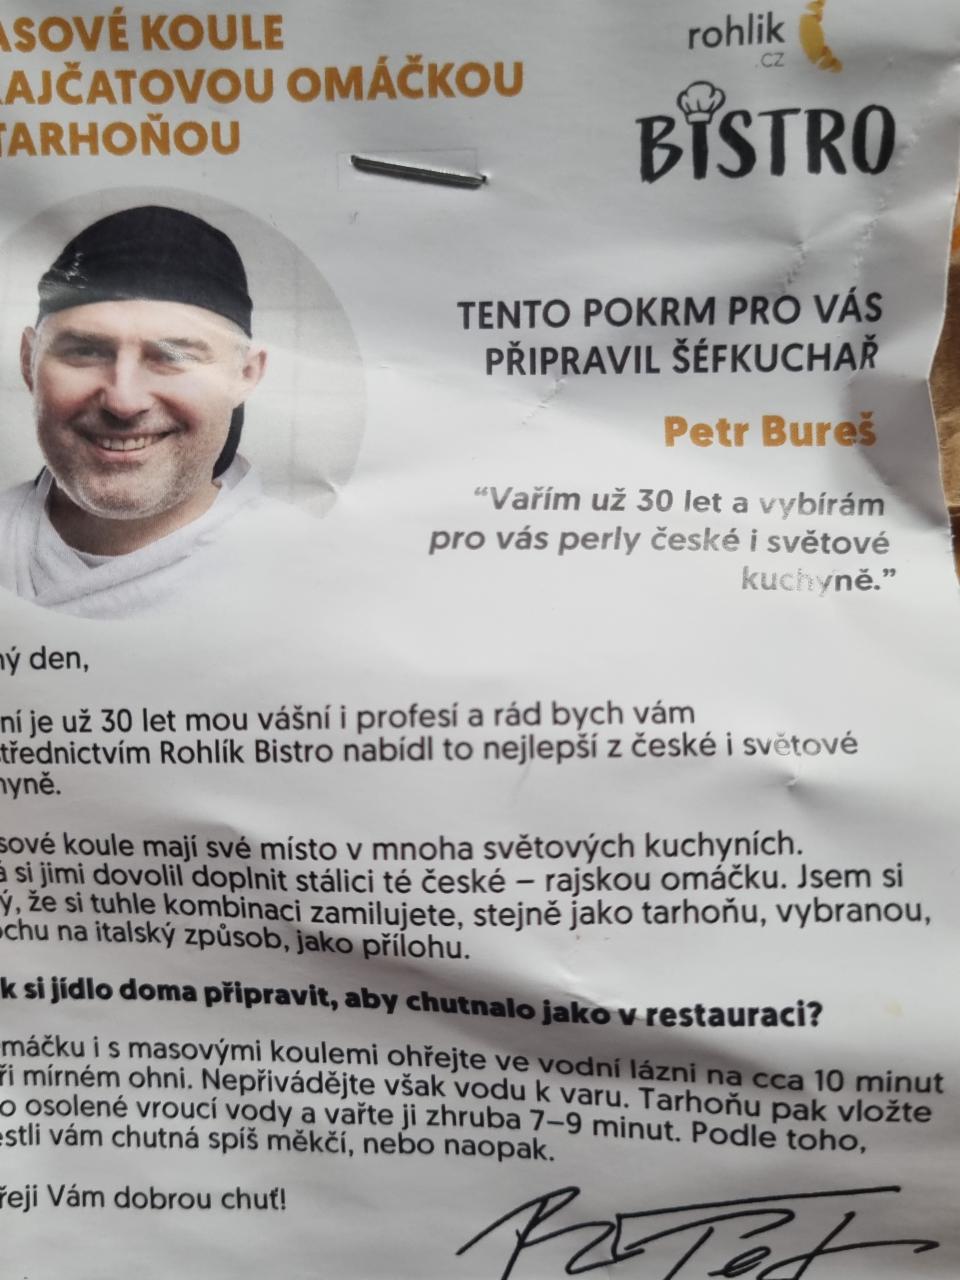 Fotografie - Bistro Masové koule s rajčatovou omáčkou a tarhoňou Rohlik.cz